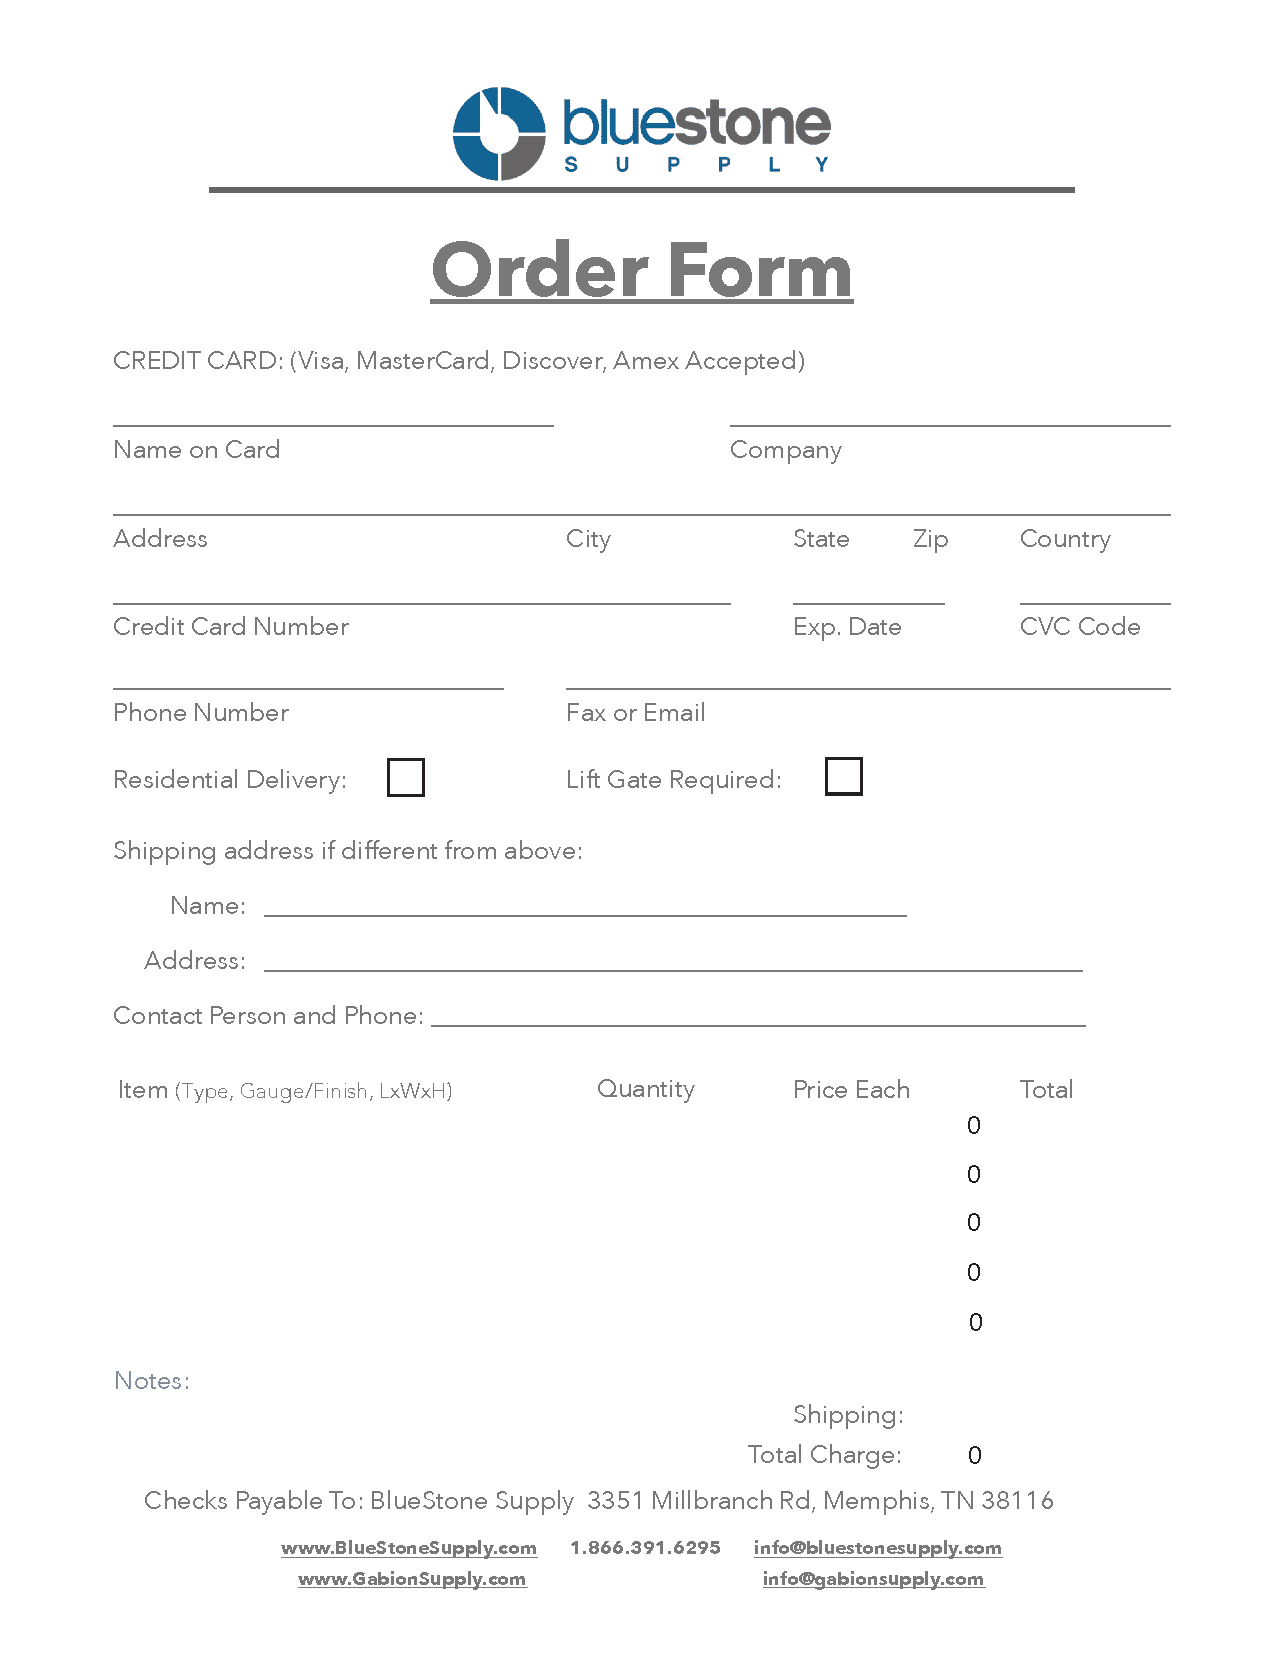 Order Form 2020 image